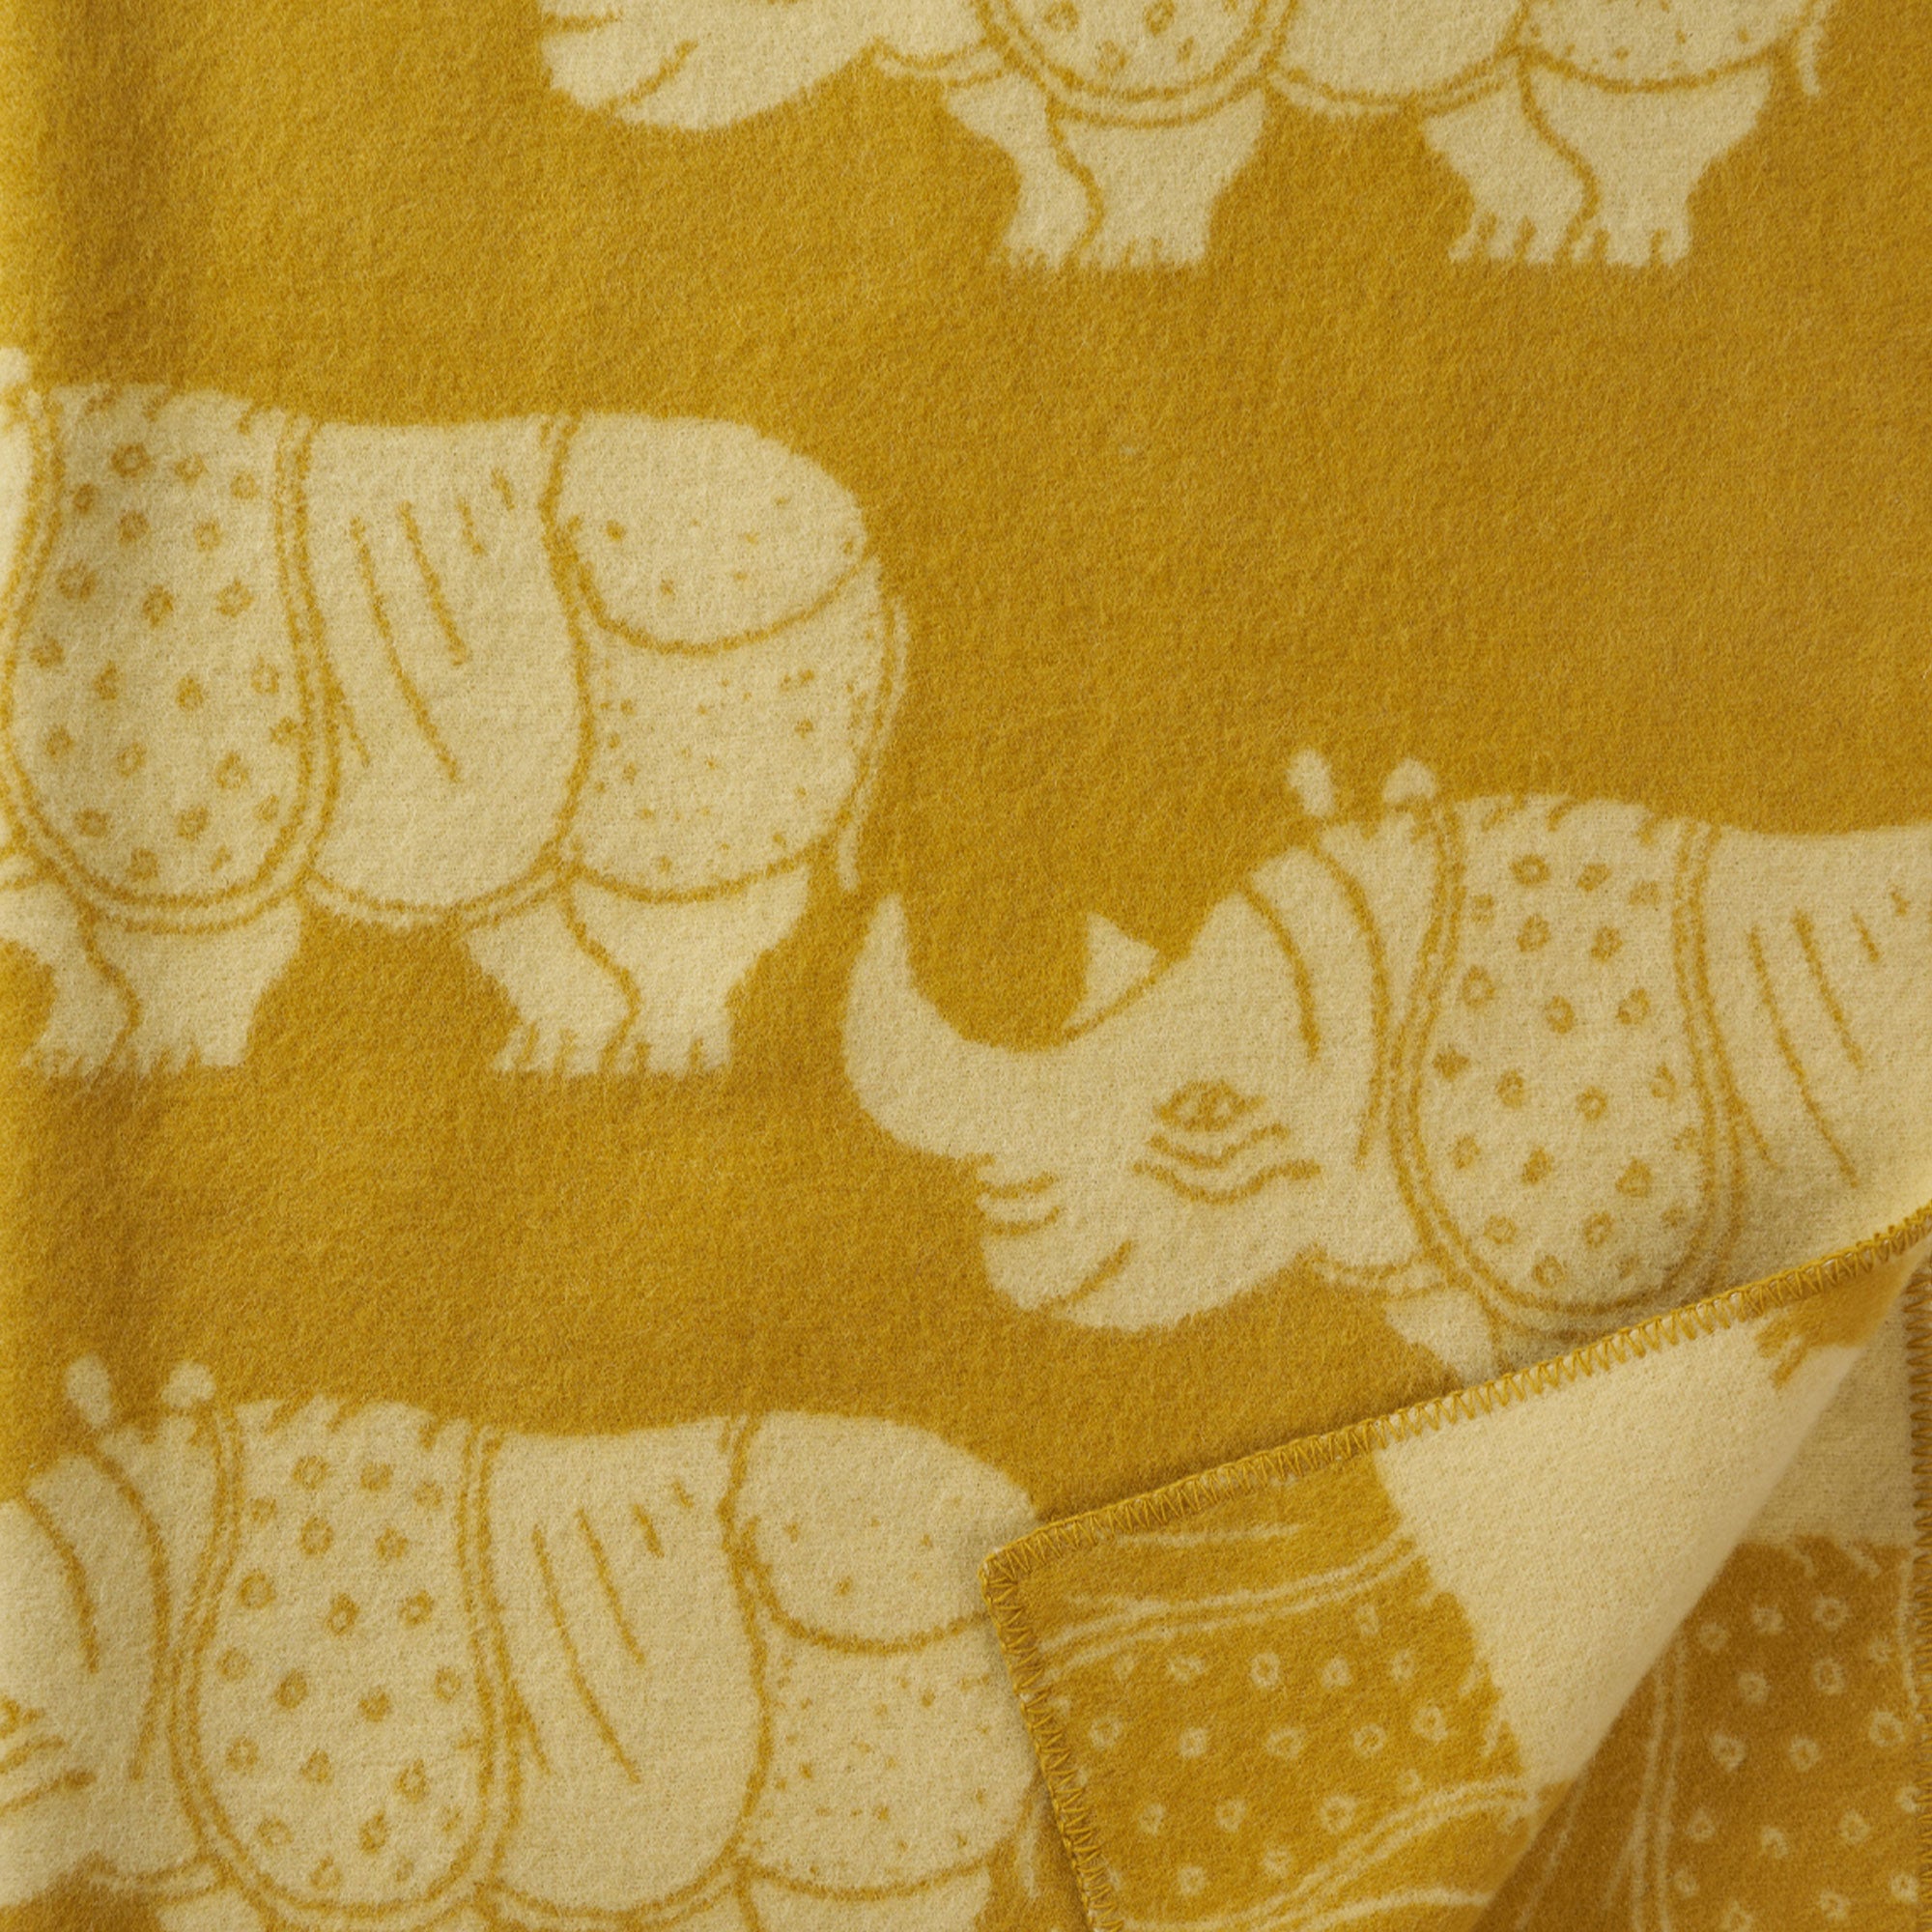 Rhino Yellow 130x180cm Woven Eco Lambswool Blanket